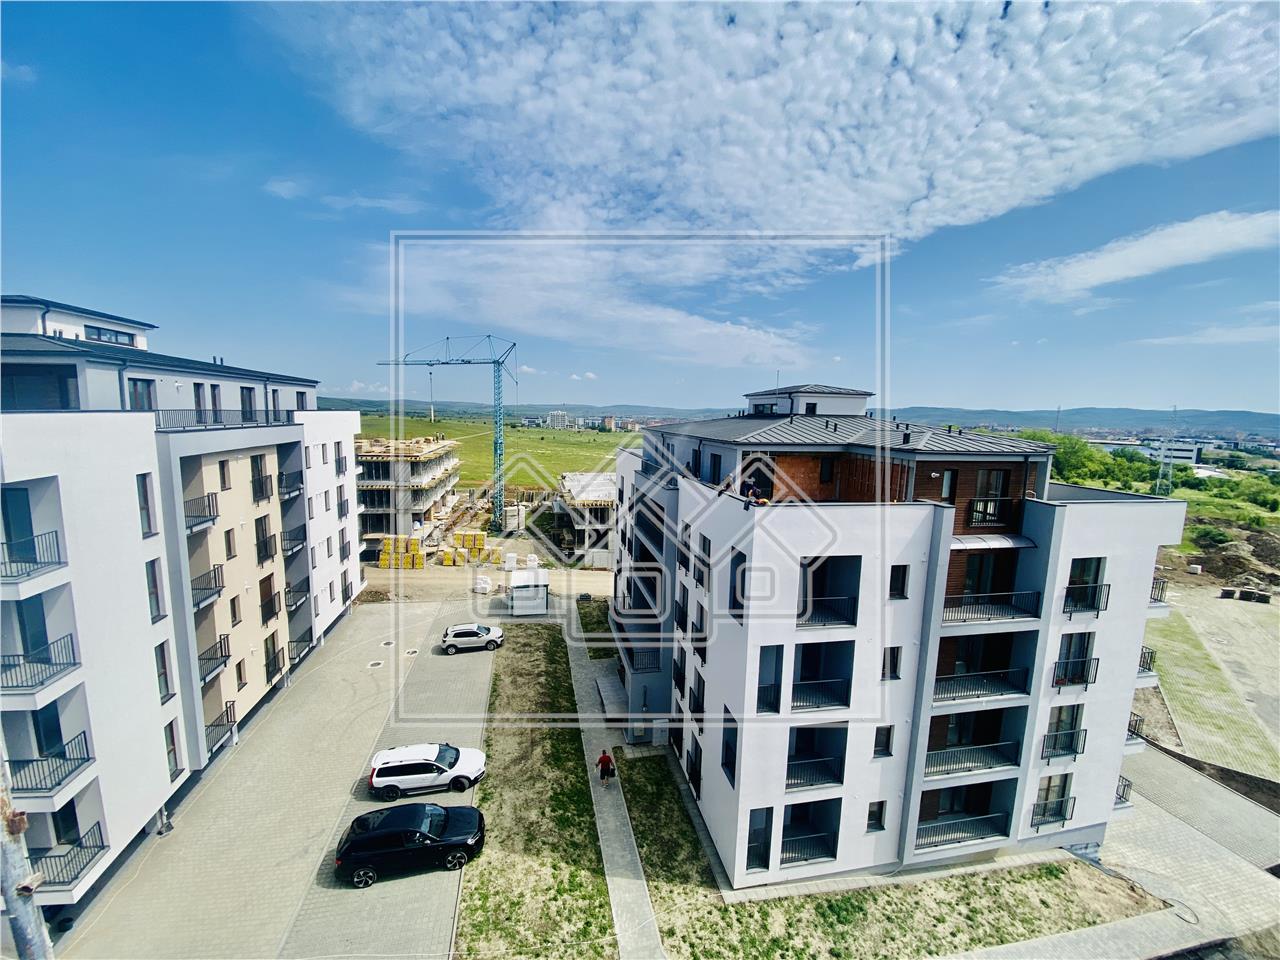 Apartament de vanzare in Sibiu - C3 - Intabulat - bloc cu lift si boxa